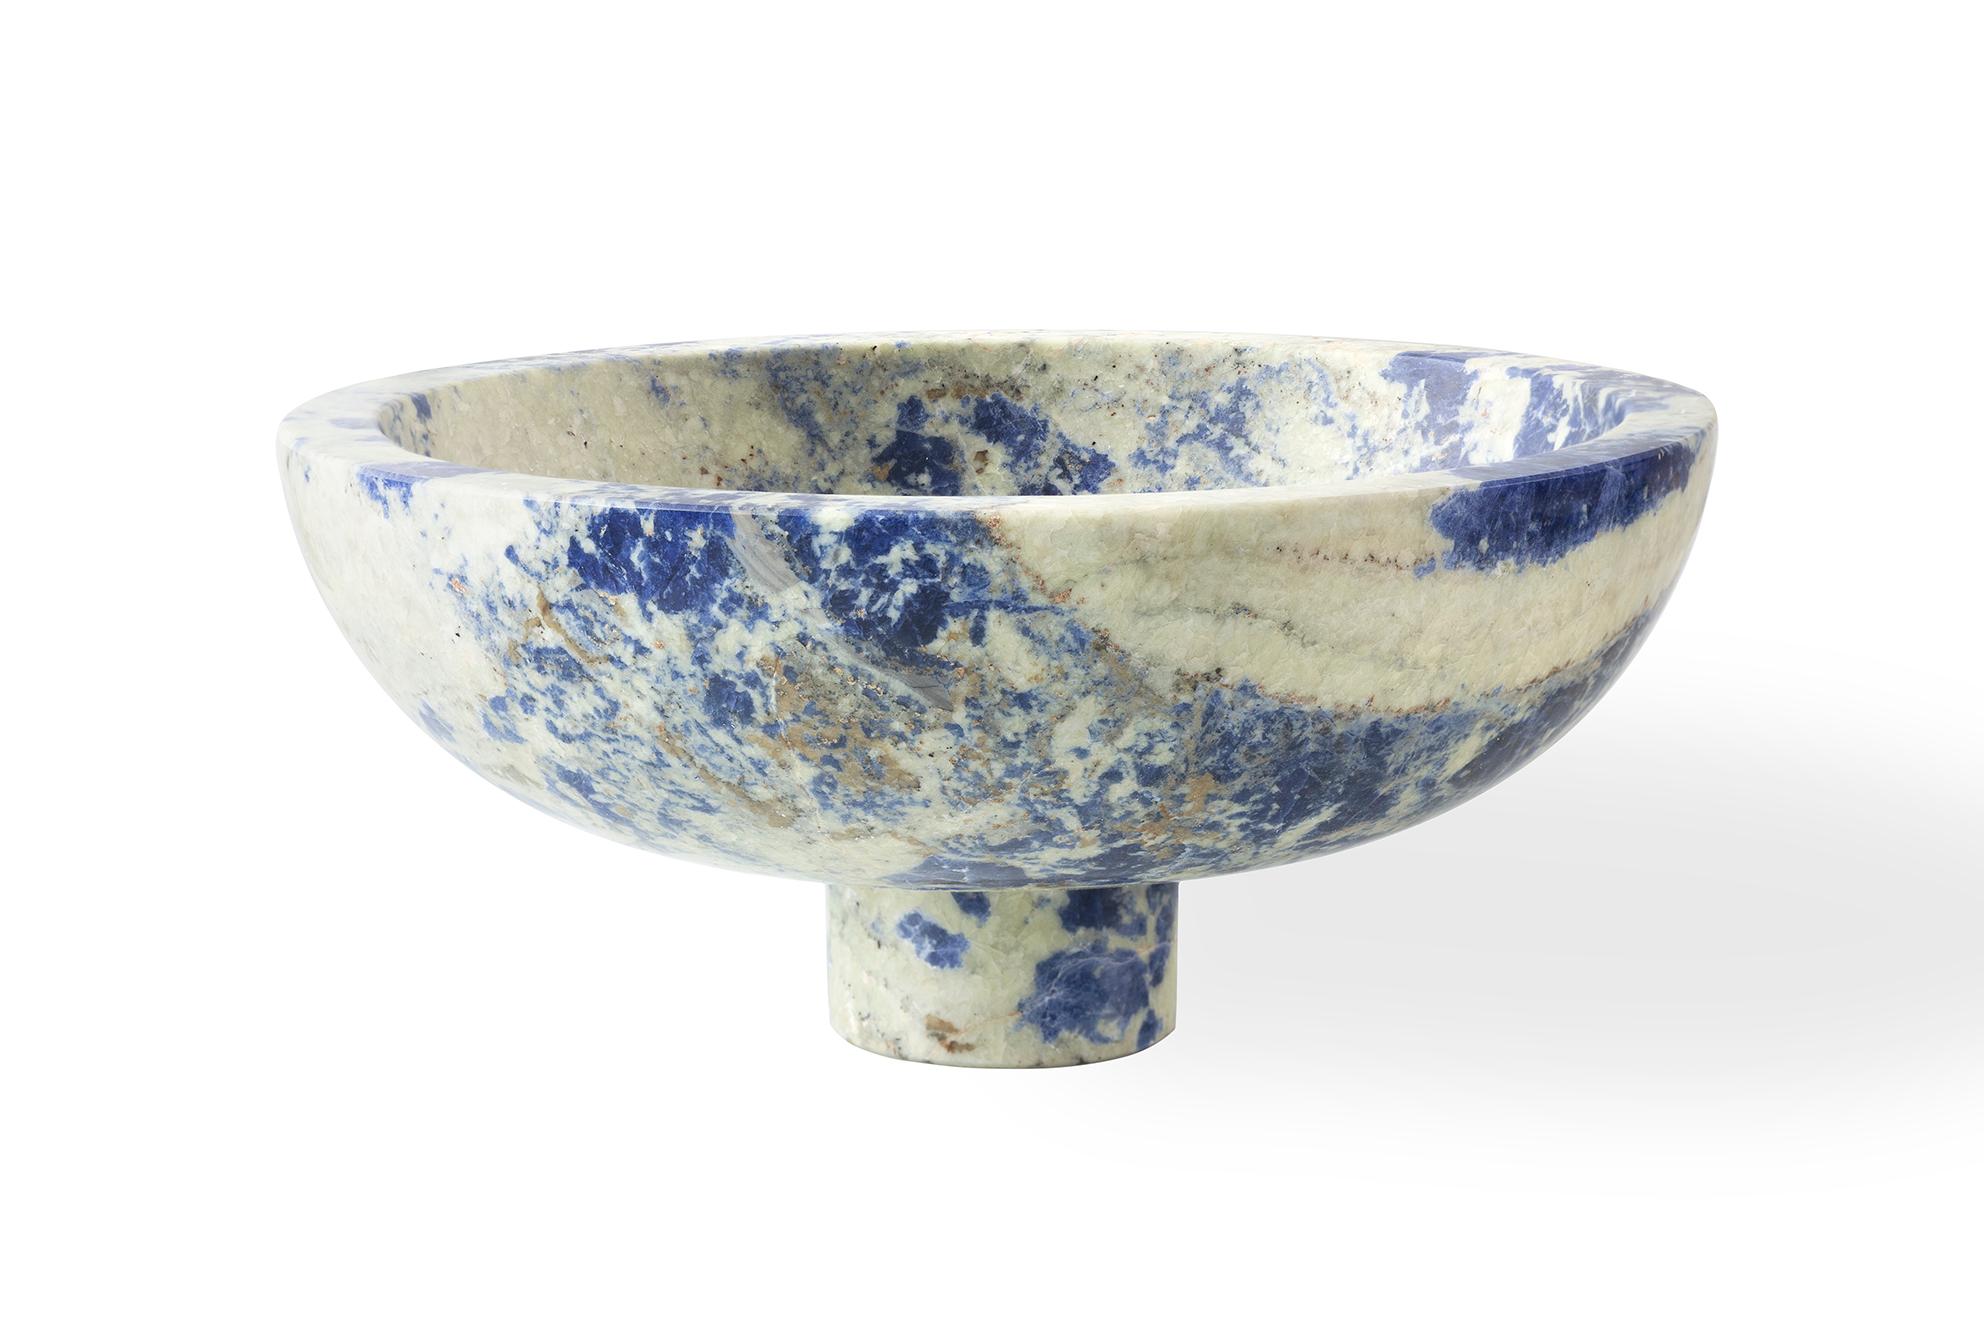 Italian New modern Fruit Bowl in Blue Marble, creator Karen Chekerdjian Stock For Sale